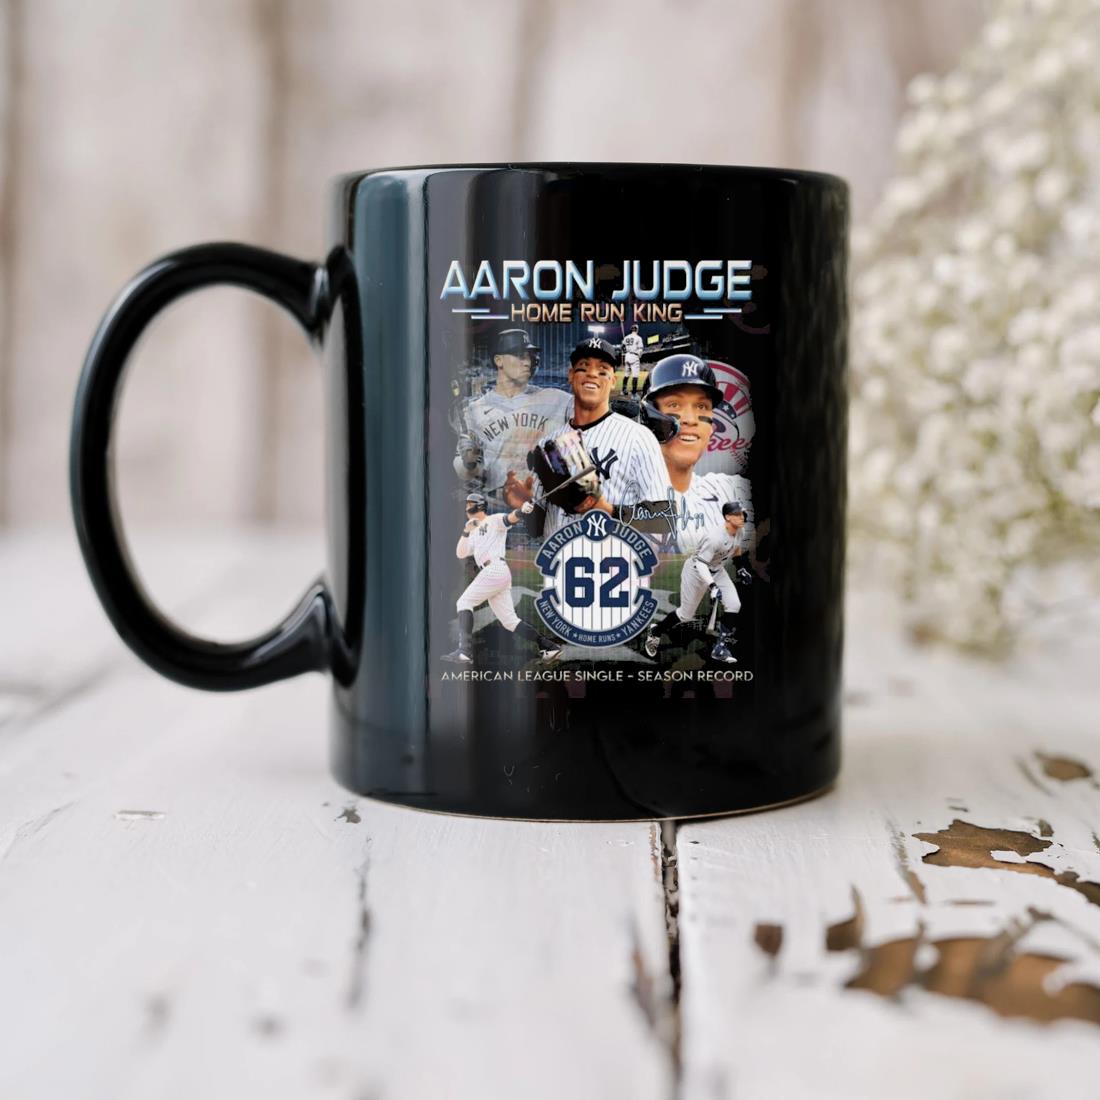 Aaron Judge Home Run King American League Single Season Record